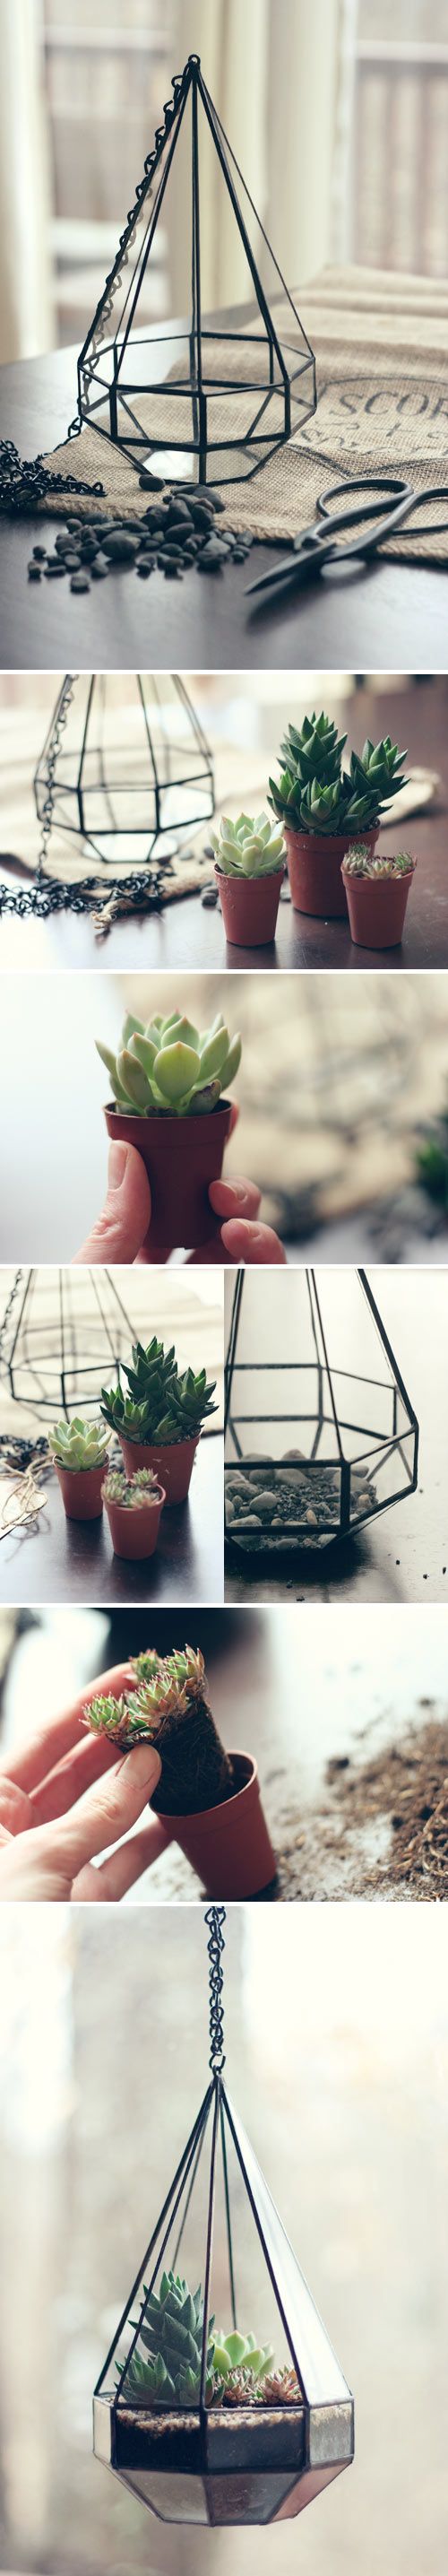 21 Simple Ideas For Adorable DIY Terrariums - BuzzFeed Mobile